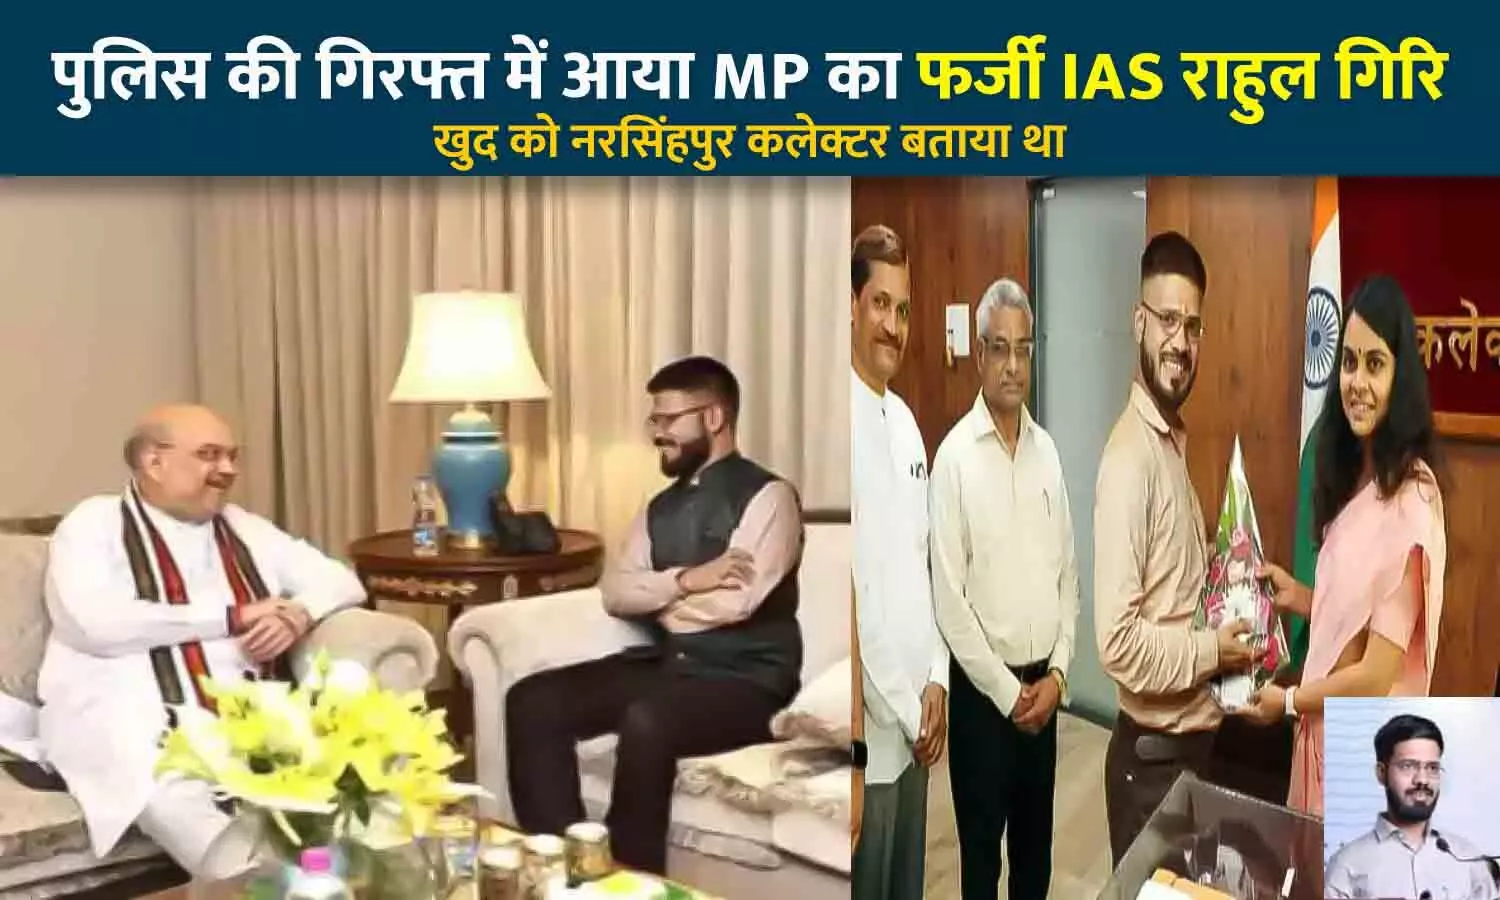 MP का फर्जी IAS राहुल गिरी गिरफ्तार: नरसिंहपुर कलेक्टर बनने की फोटो पोस्ट की, केंद्रीय गृहमंत्री अमित शाह के साथ भी तस्वीर, जबलपुर पुलिस ने दबोचा